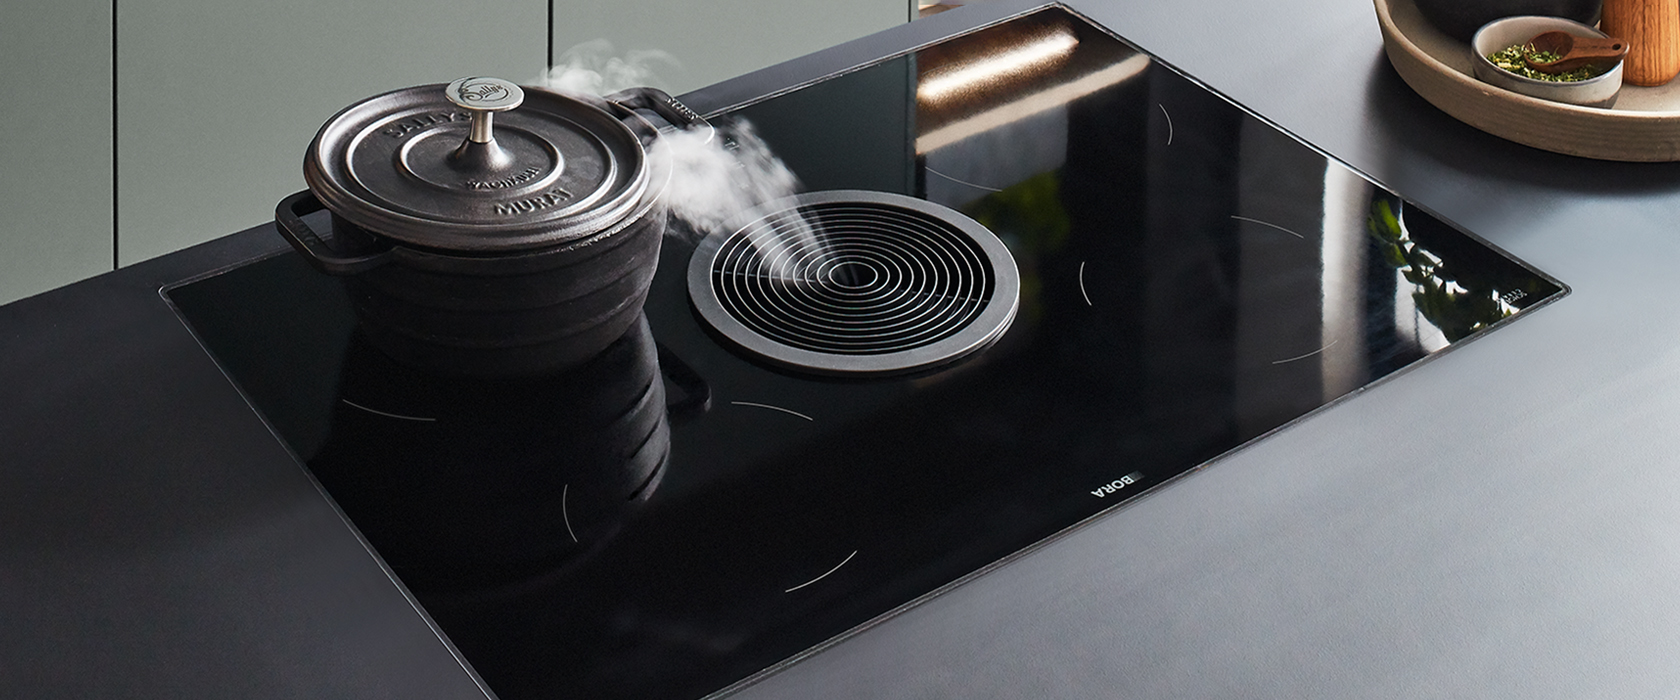 Elegante y moderna placa de inducción con una olla de cocción activa, con vapor ascendente, ubicada en una cocina contemporánea con tonos terrosos sutiles.